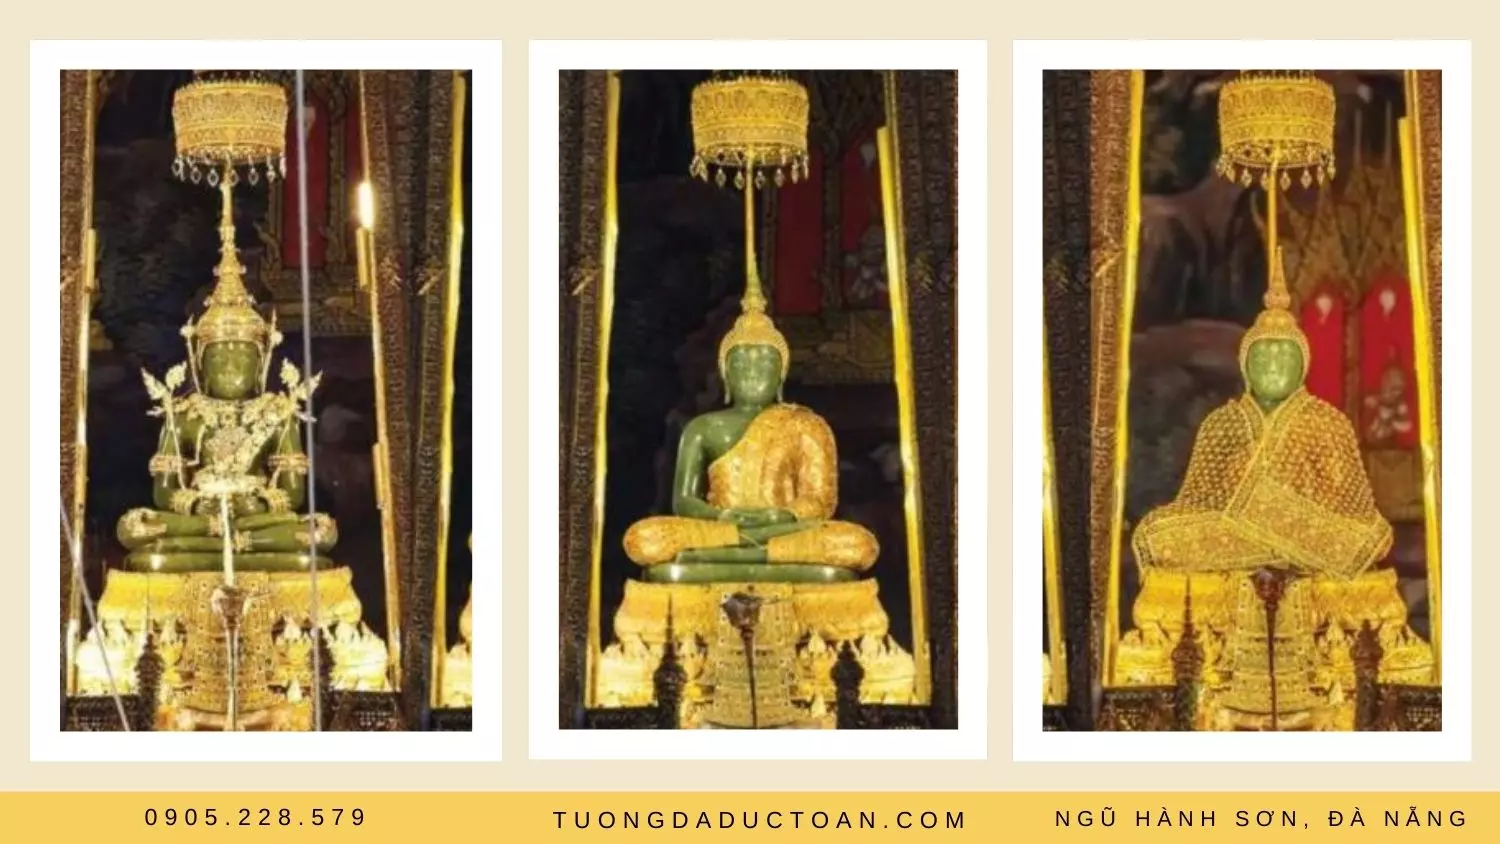 Chùa Phật Ngọc được đặt trong ngôi chùa Wat Phra Kaew ở Bangkok, Thái Lan; ngôi chùa được coi là linh thiêng nhất của Phật giáo